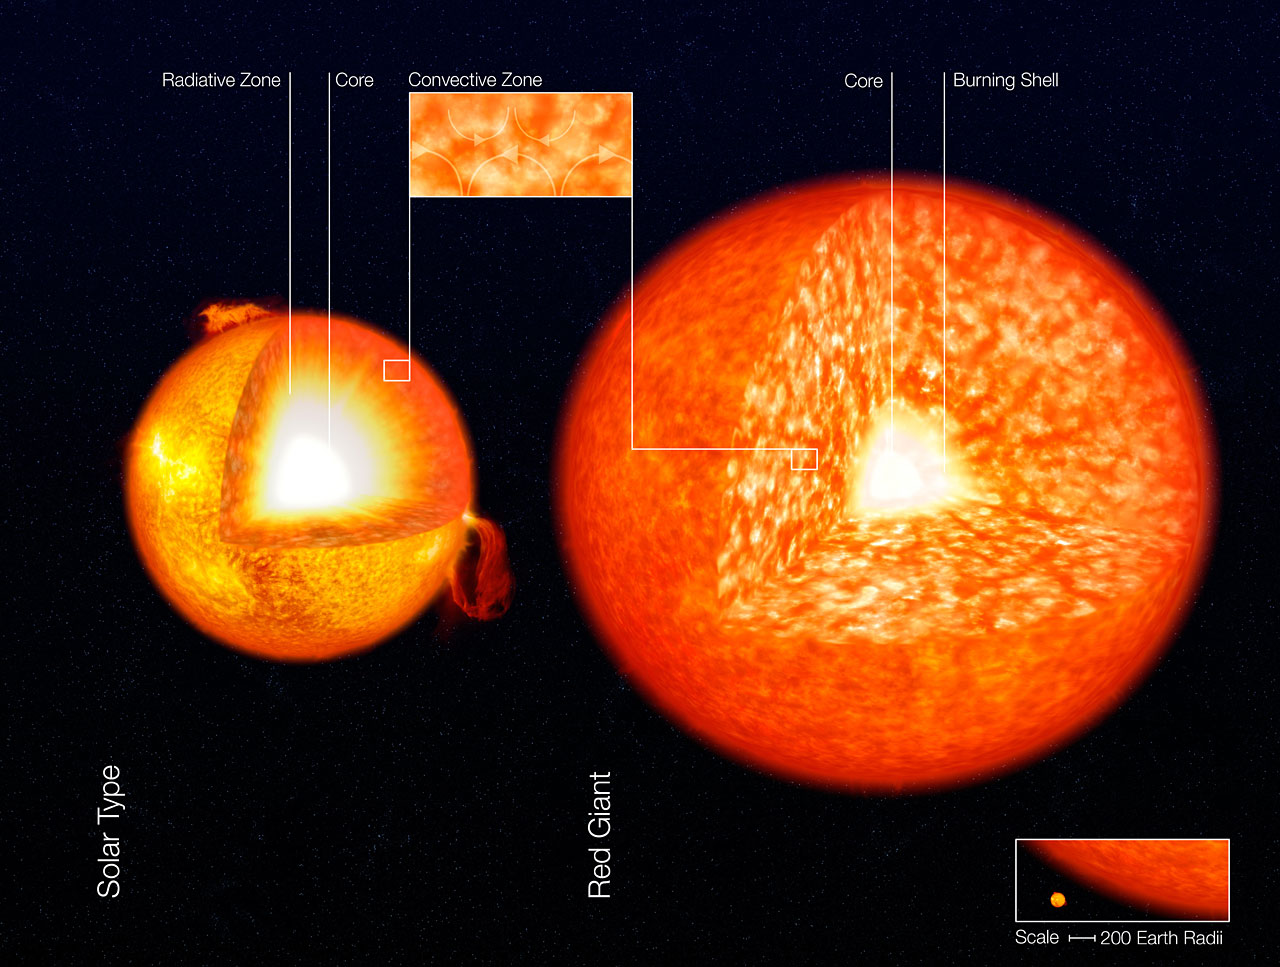 Sur la gauche, on voit la structure interne du Soleil avec son cœur (core en anglais) où l'hydrogène brûle pour donner de l'hélium. L'essentiel du Soleil est dominé par la zone radiative (jaune), celle où le transfert de chaleur se fait par rayonnement. En surface, on voit la zone convective, où c'est la convection dans un fluide (comme dans l'eau d'une casserole qui bout) qui assure ce transfert. Sur la partie droite de ce schéma, on voit une géante rouge beaucoup plus grande que le Soleil (échelle en bas à droite), dominée par la convection. Elle brûle son hydrogène autour de son cœur en hélium. © ESO